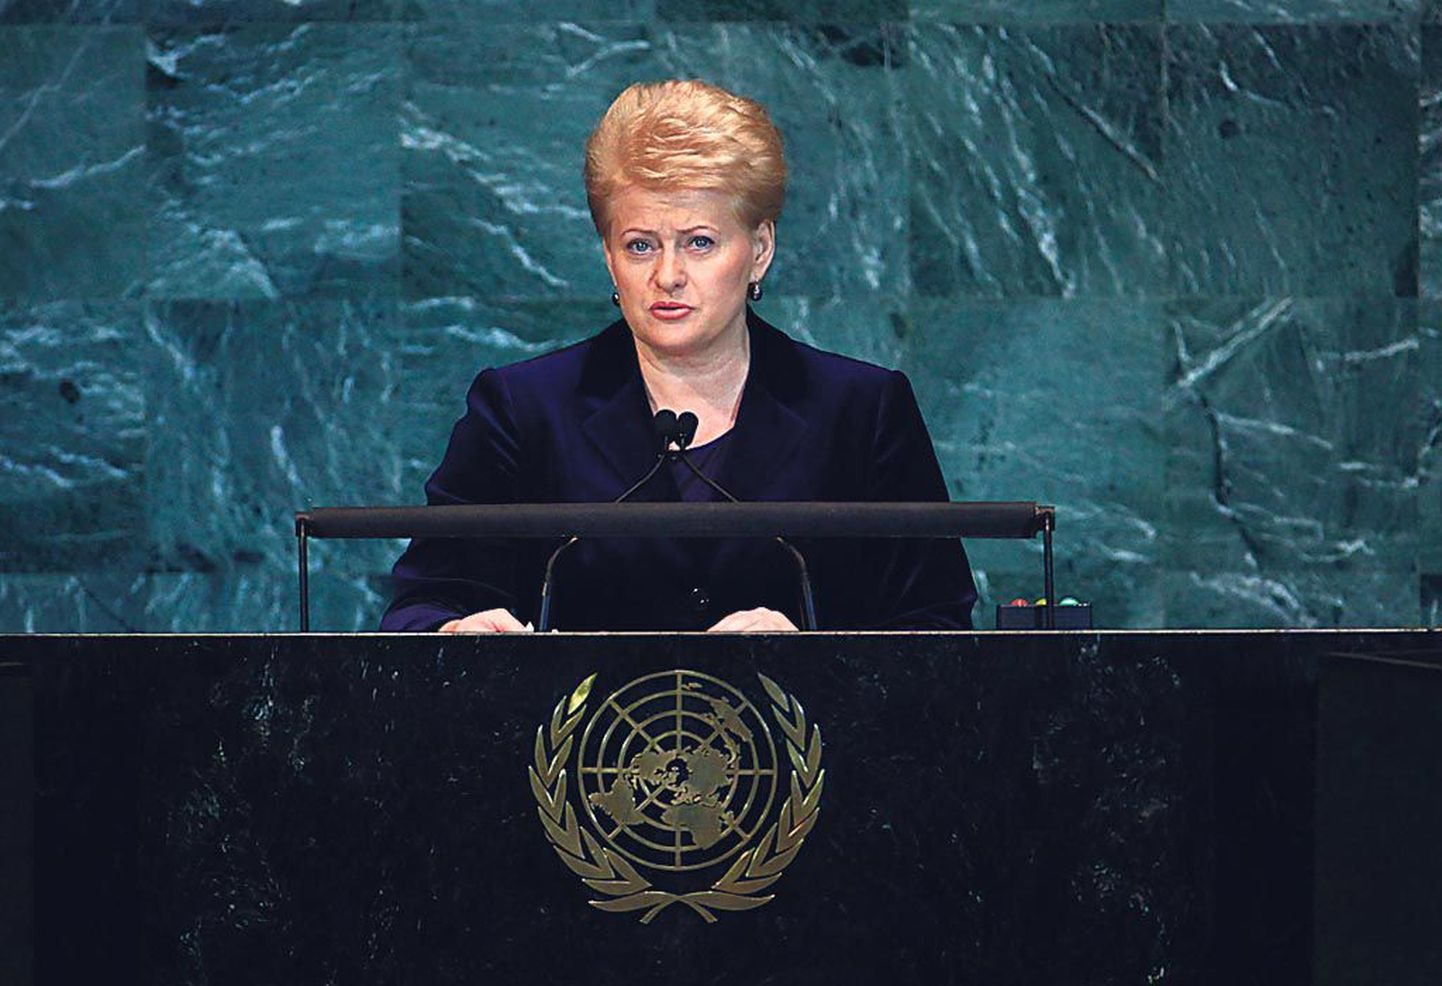 Leedu riigipea Dalia Grybauskaite oli ainus Balti riikide president, kellega Barack Obama juttu ajas.